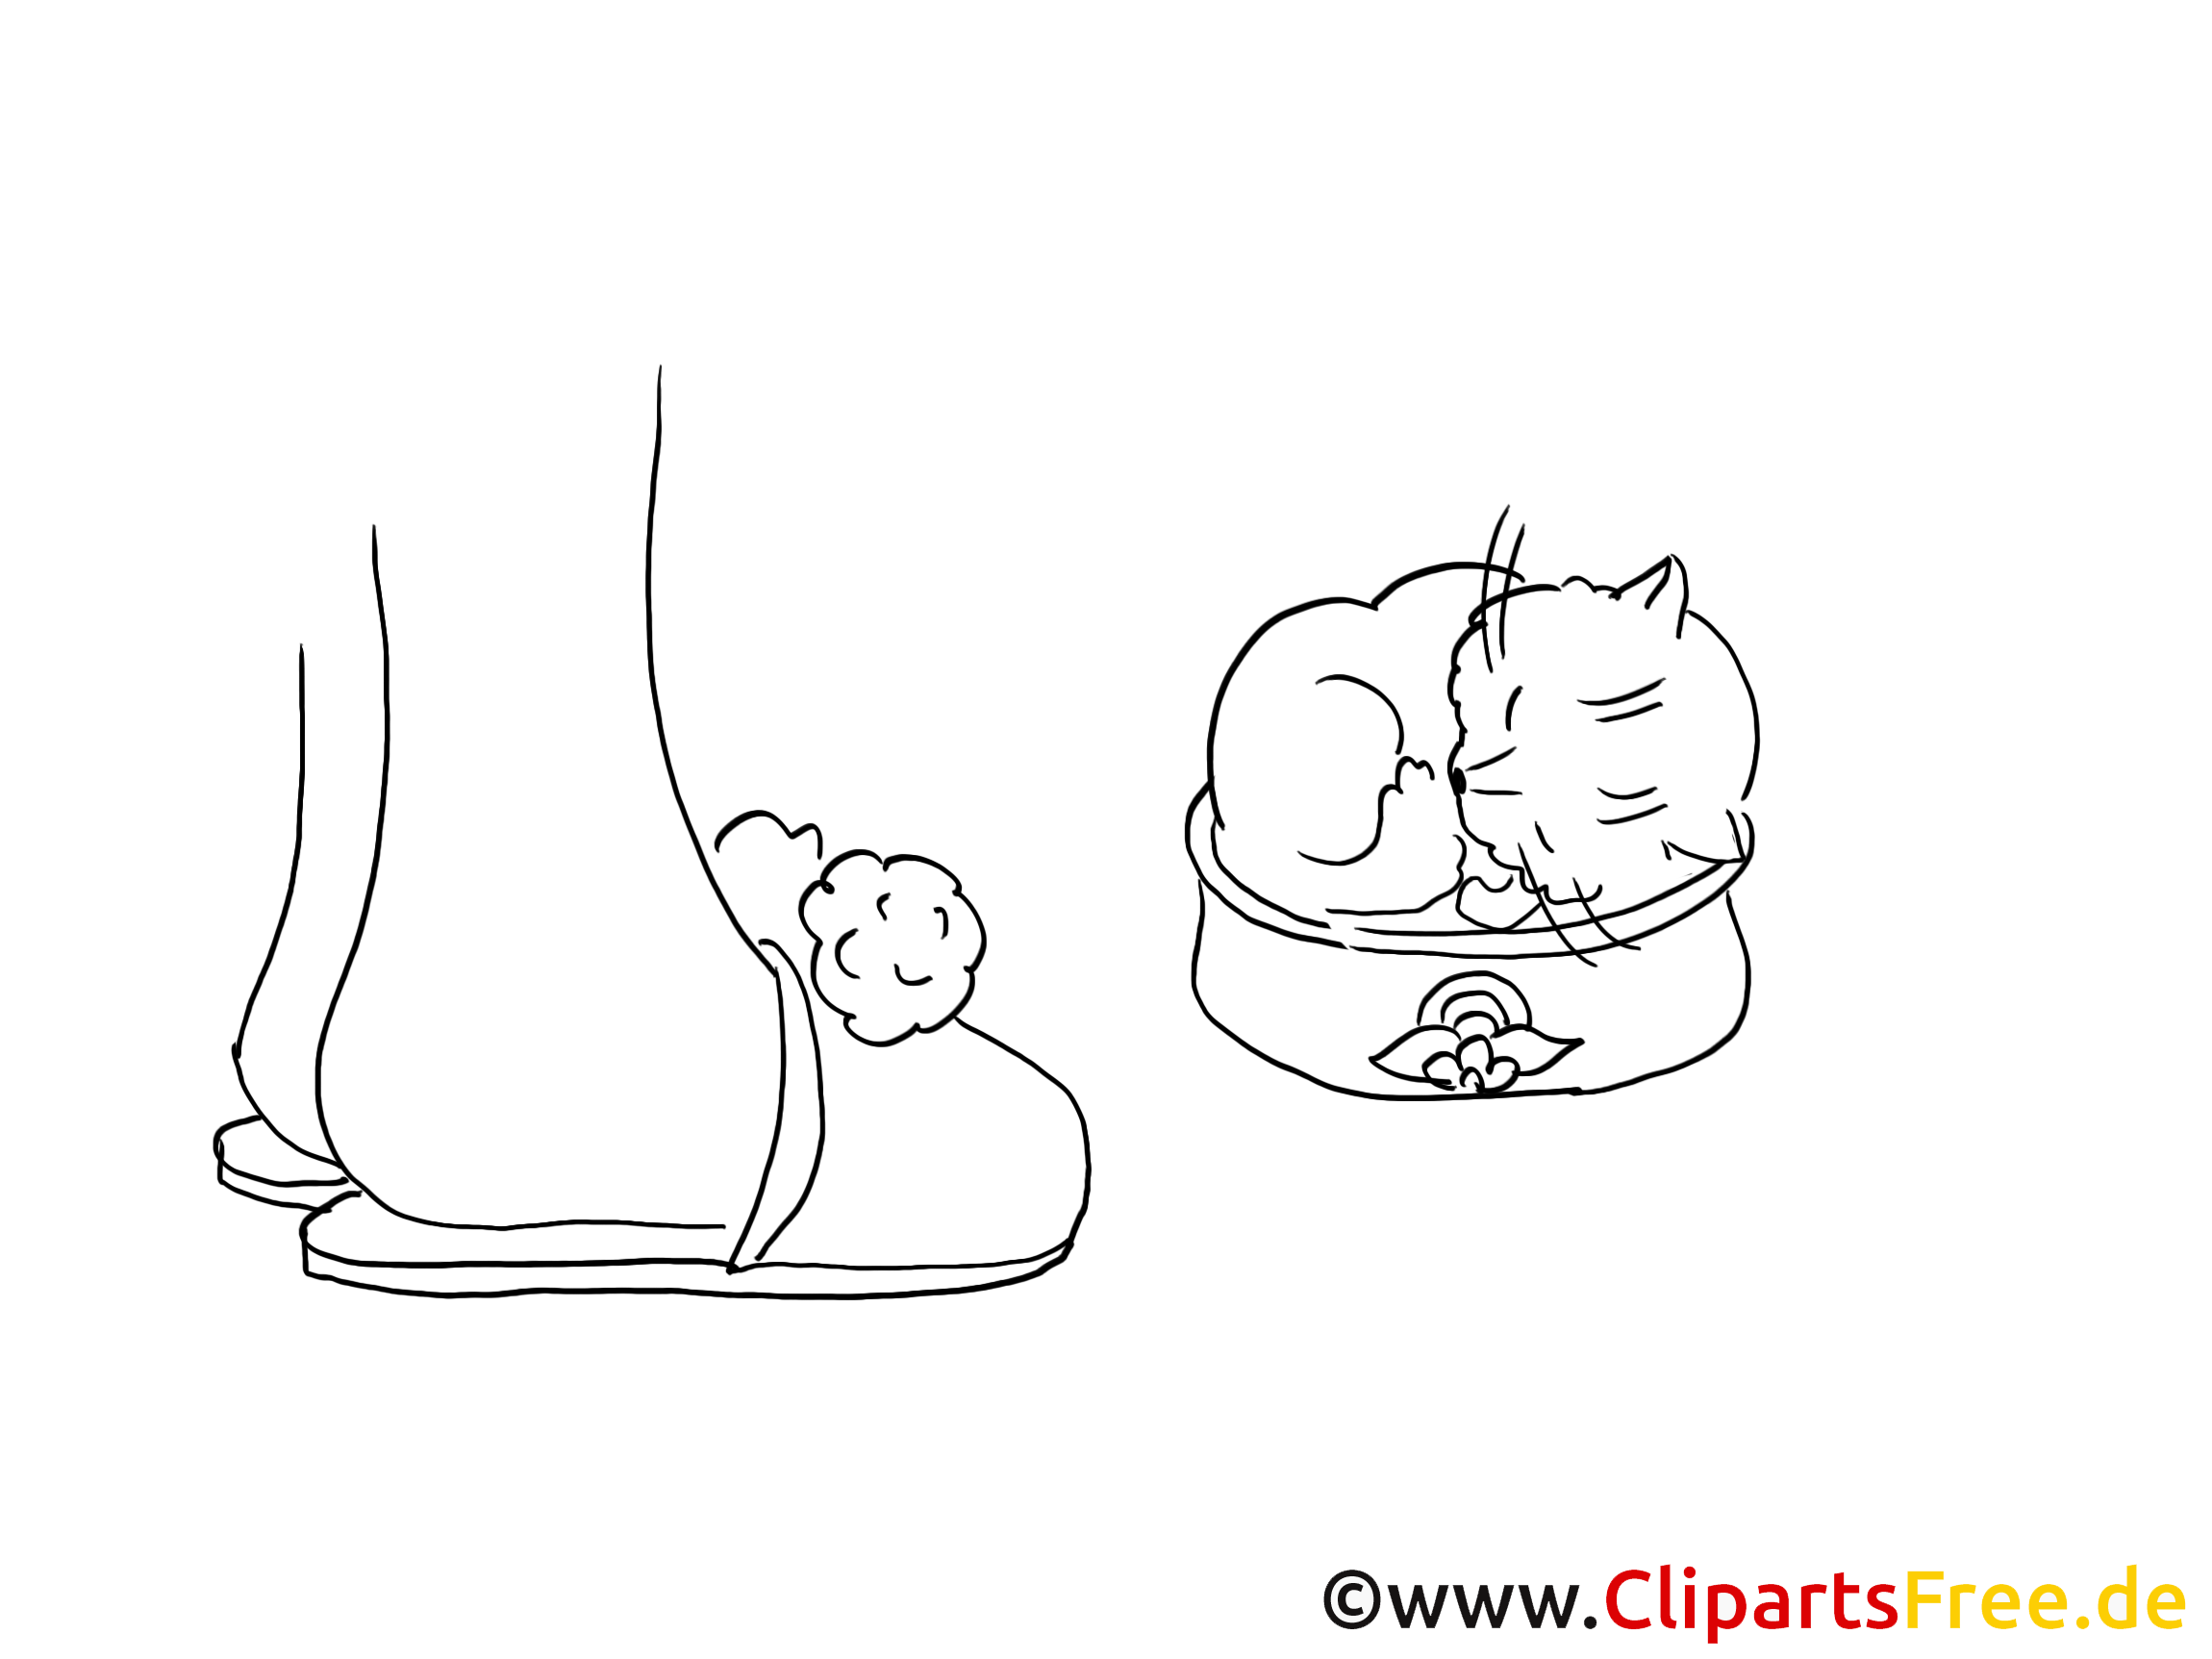 Écuelle dessin – Coloriage chats à télécharger